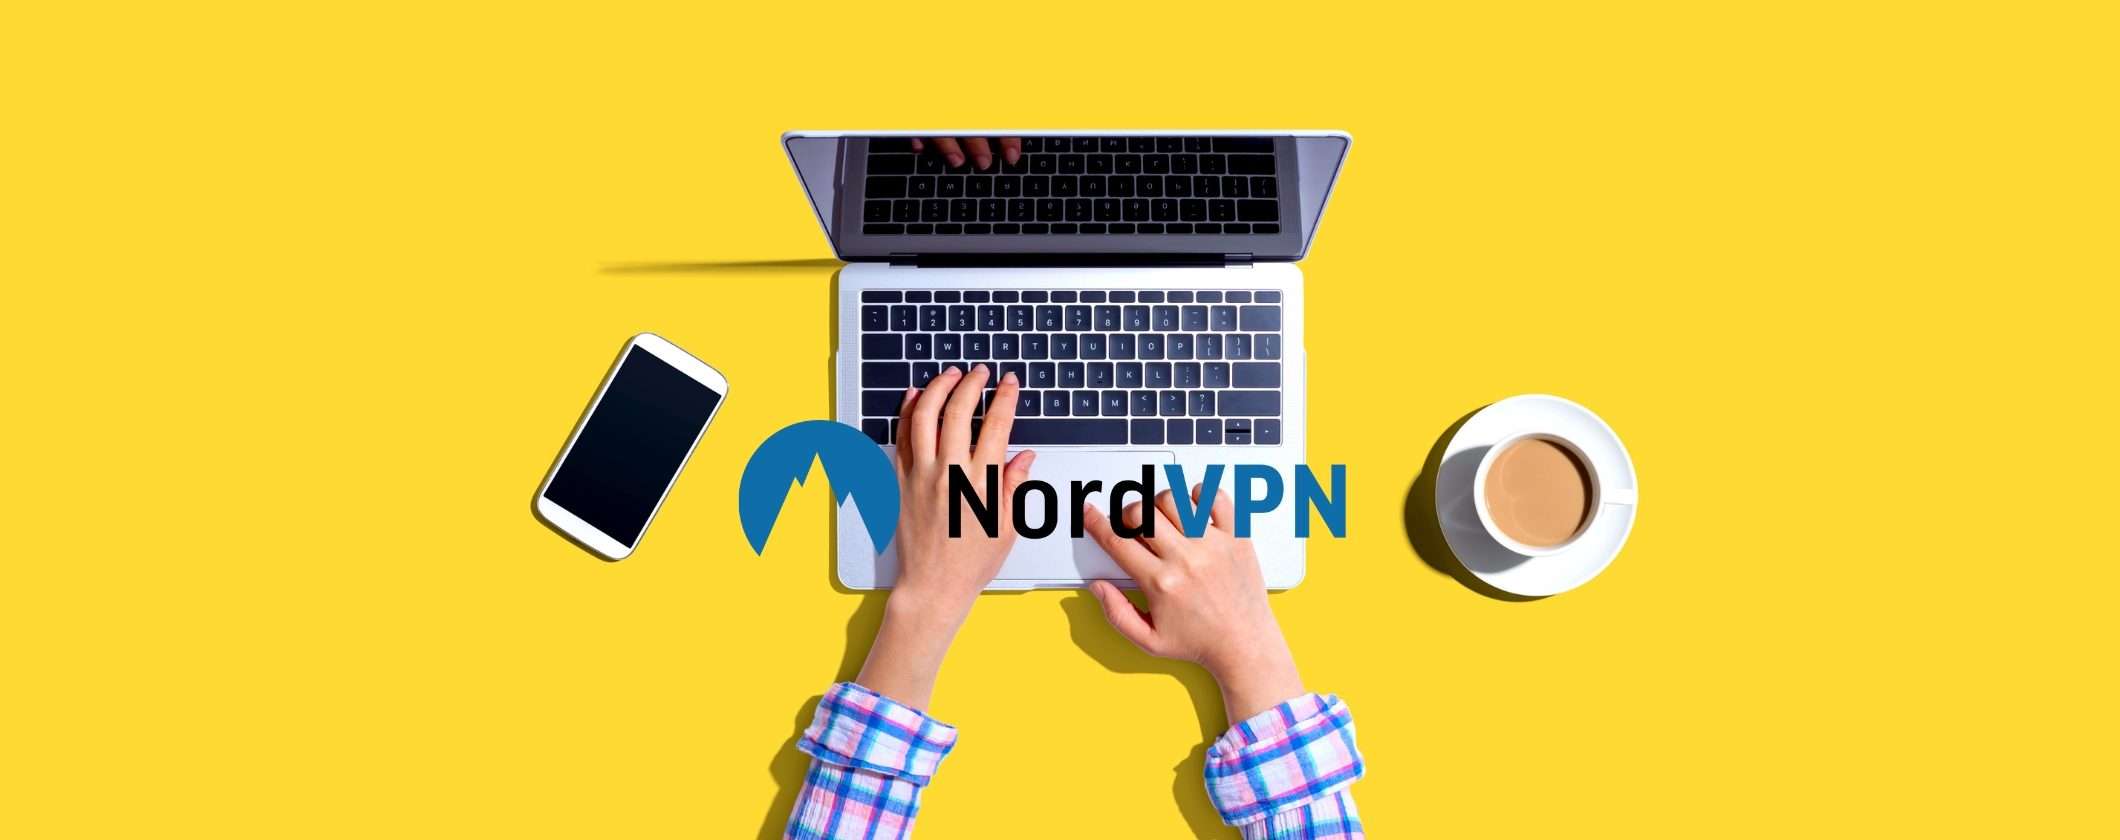 NordVPN è VPN e Antivirus in un'unica soluzione con 3 mesi gratis